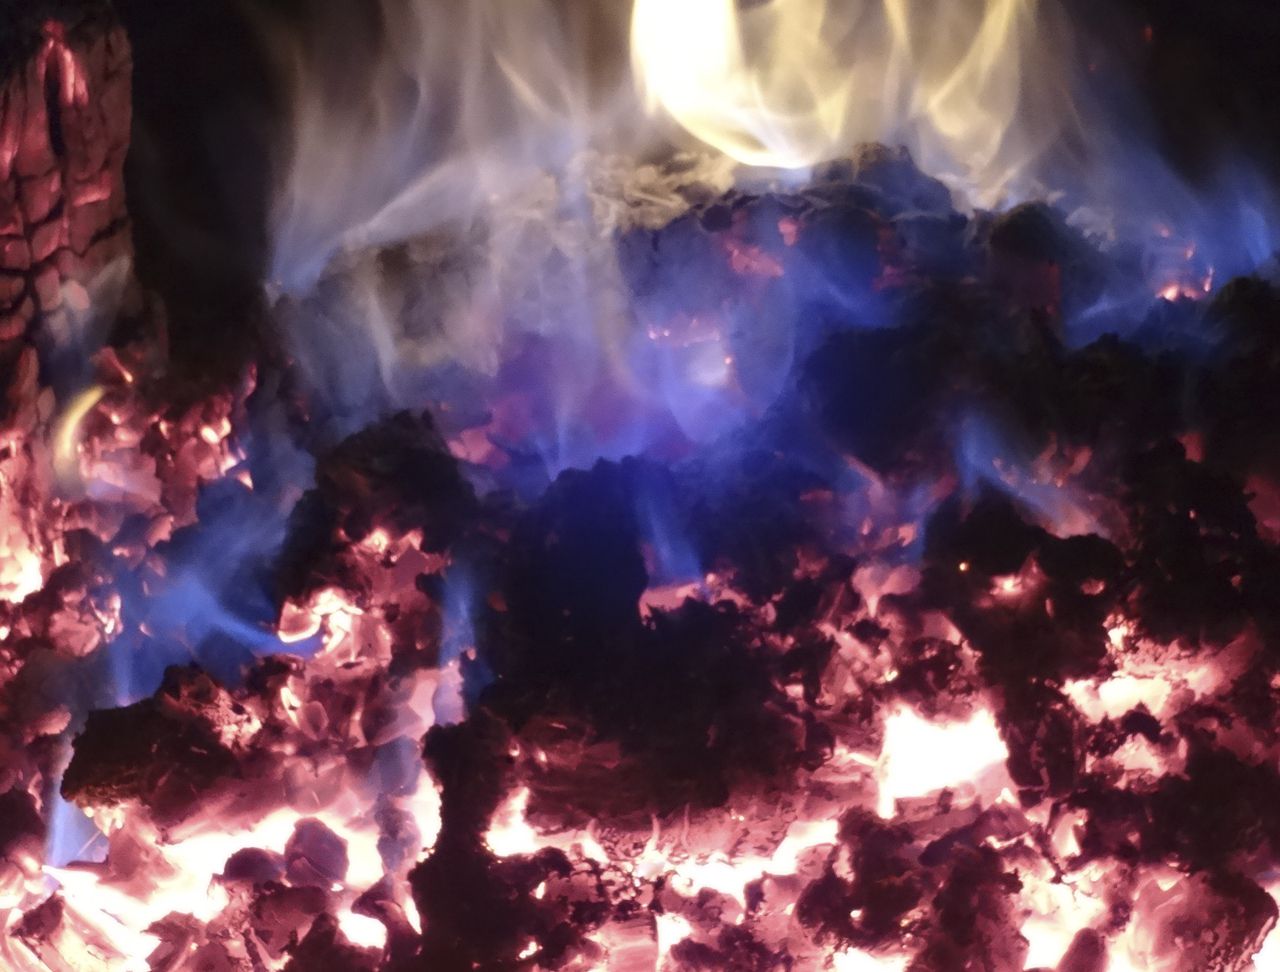 Угли догорают, макро - Аркаим, июль 2014